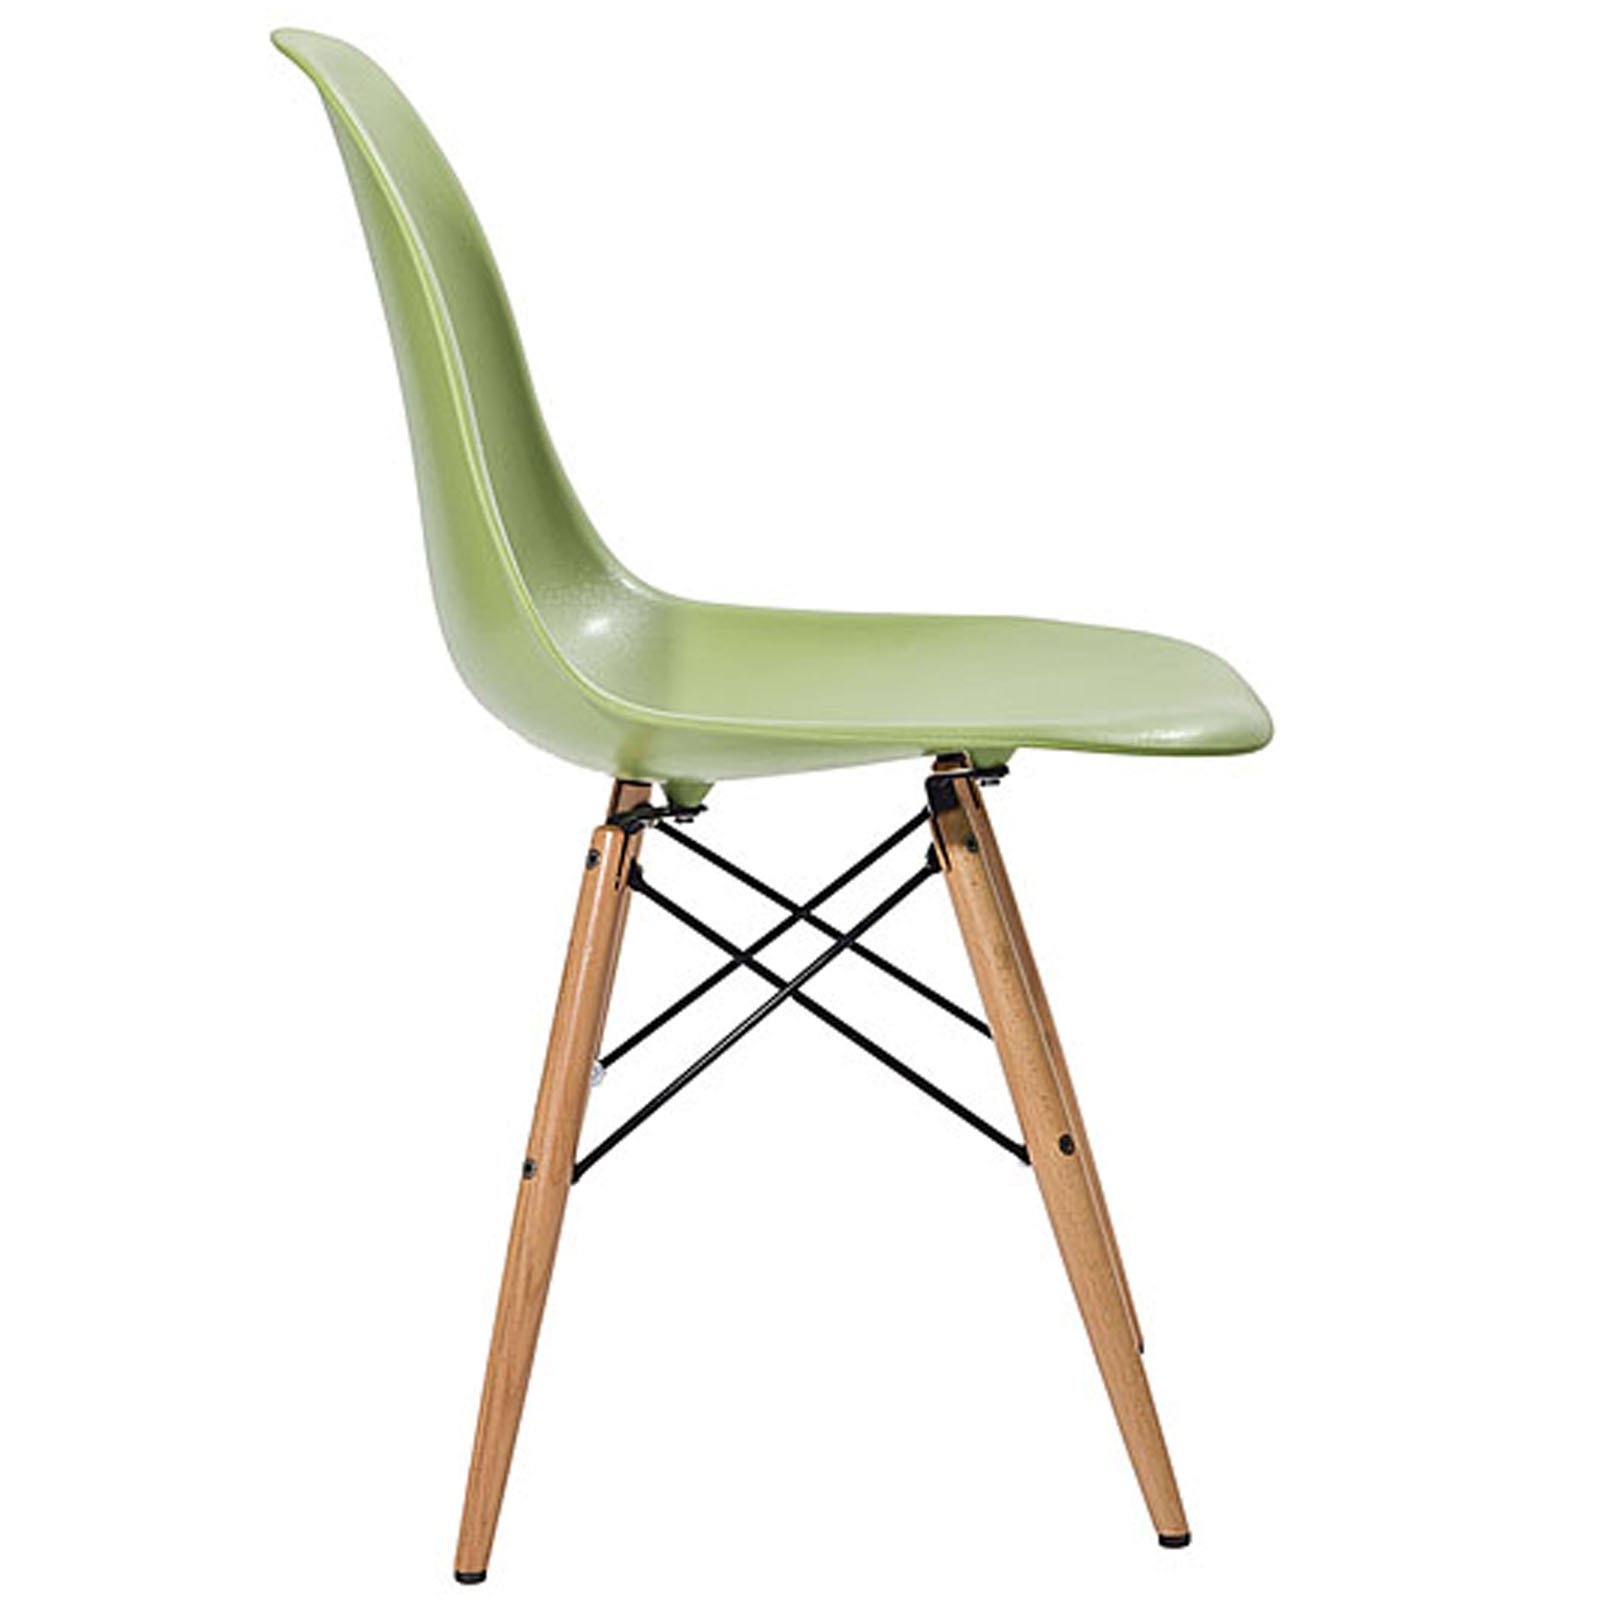 easy plastic shell chair - dowel base